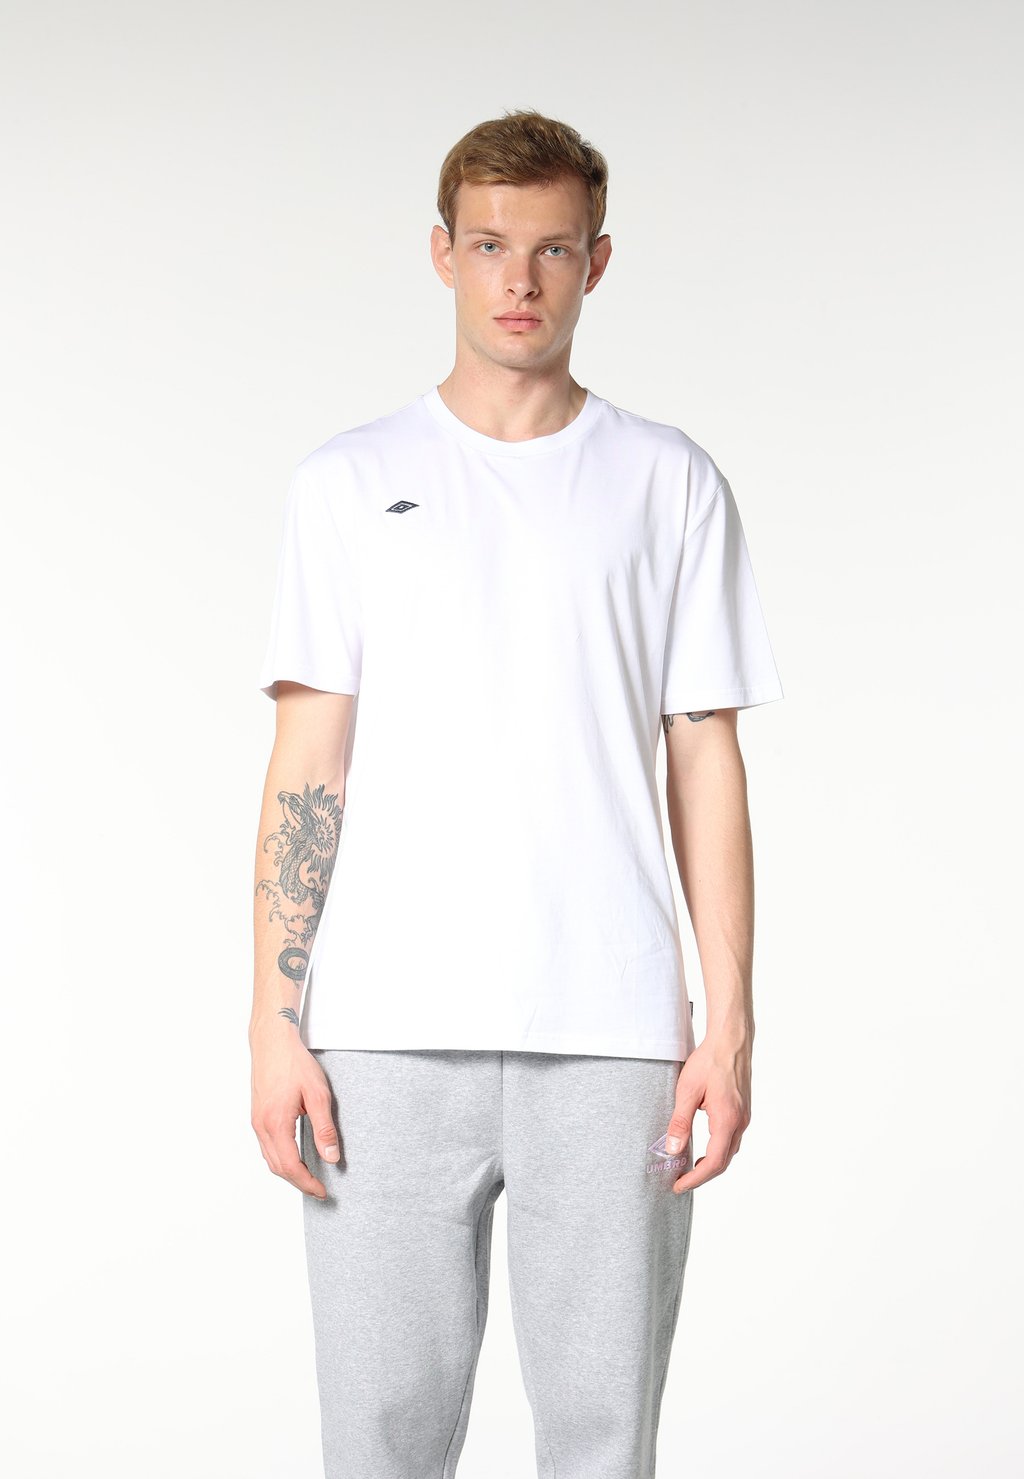 Базовая футболка Umbro, белая